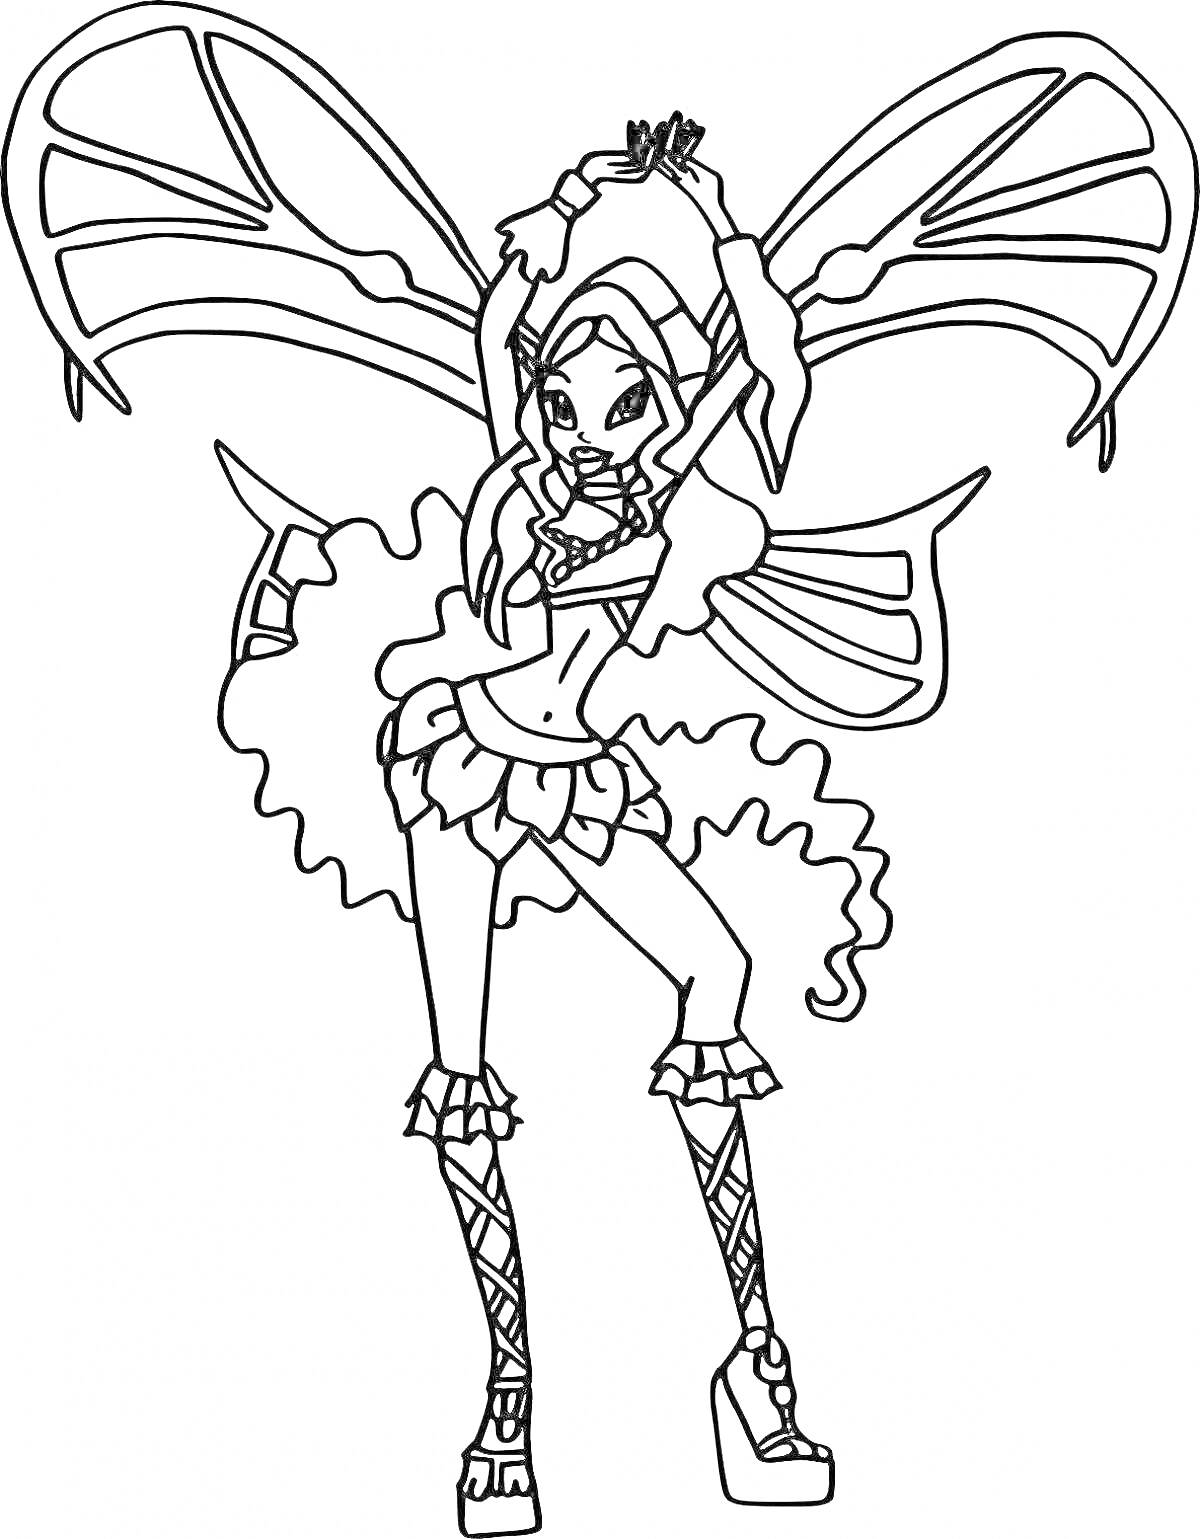 РаскраскаВинкс Лейла в трансформации Беливикс, в полный рост, с поднятыми руками, с крыльями, в одежде Беливикс, с длинными сапогами, волосы распущены